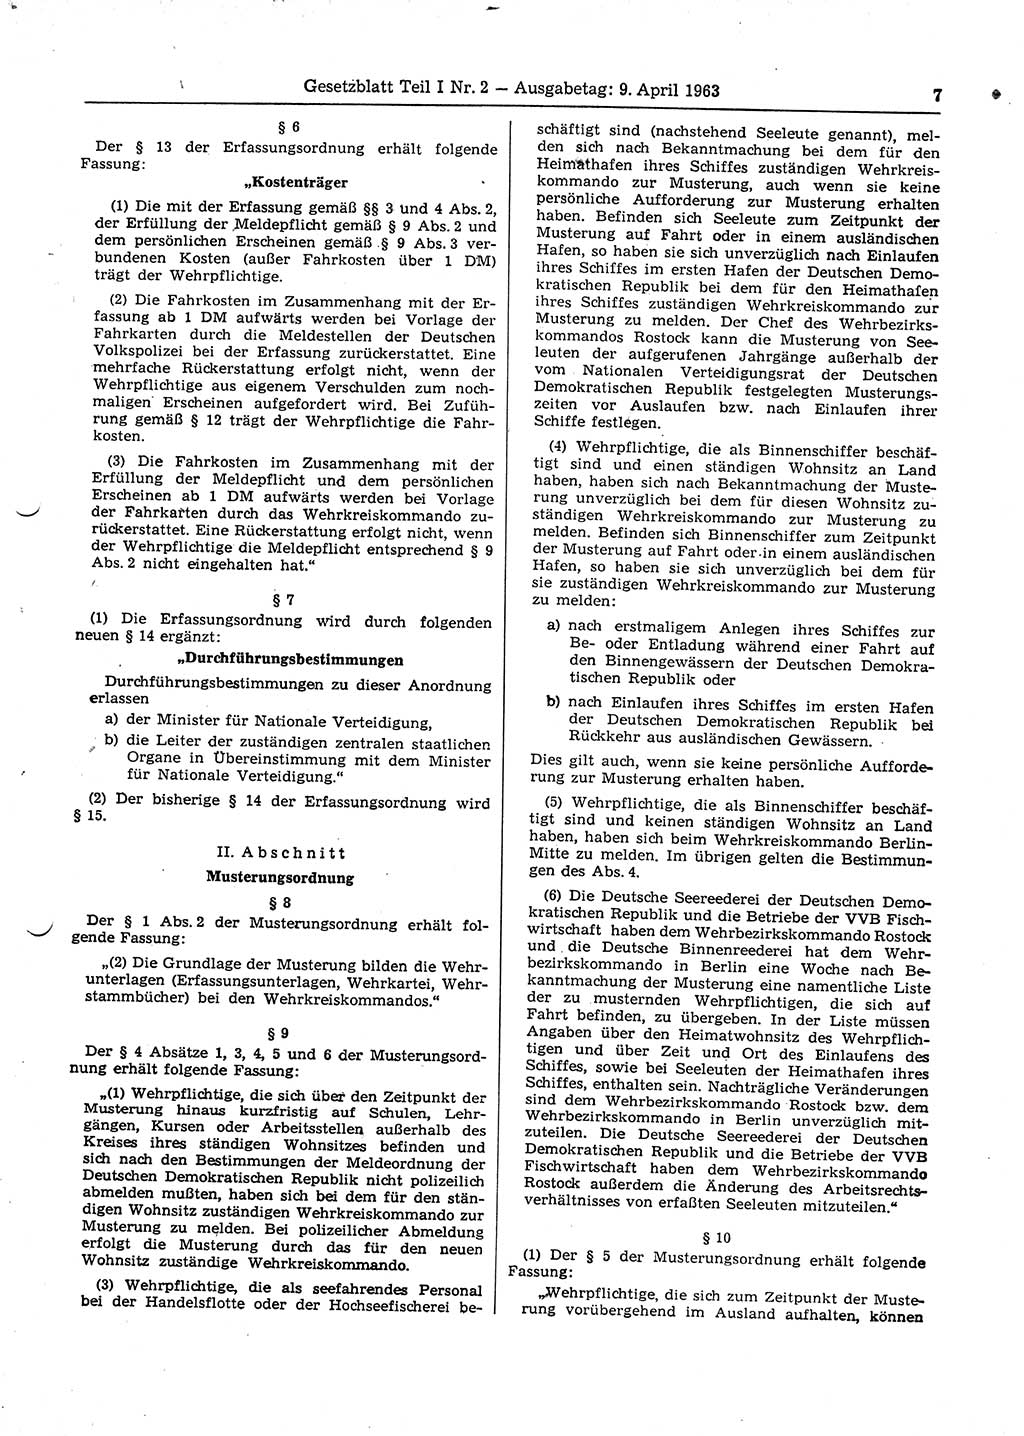 Gesetzblatt (GBl.) der Deutschen Demokratischen Republik (DDR) Teil Ⅰ 1963, Seite 7 (GBl. DDR Ⅰ 1963, S. 7)